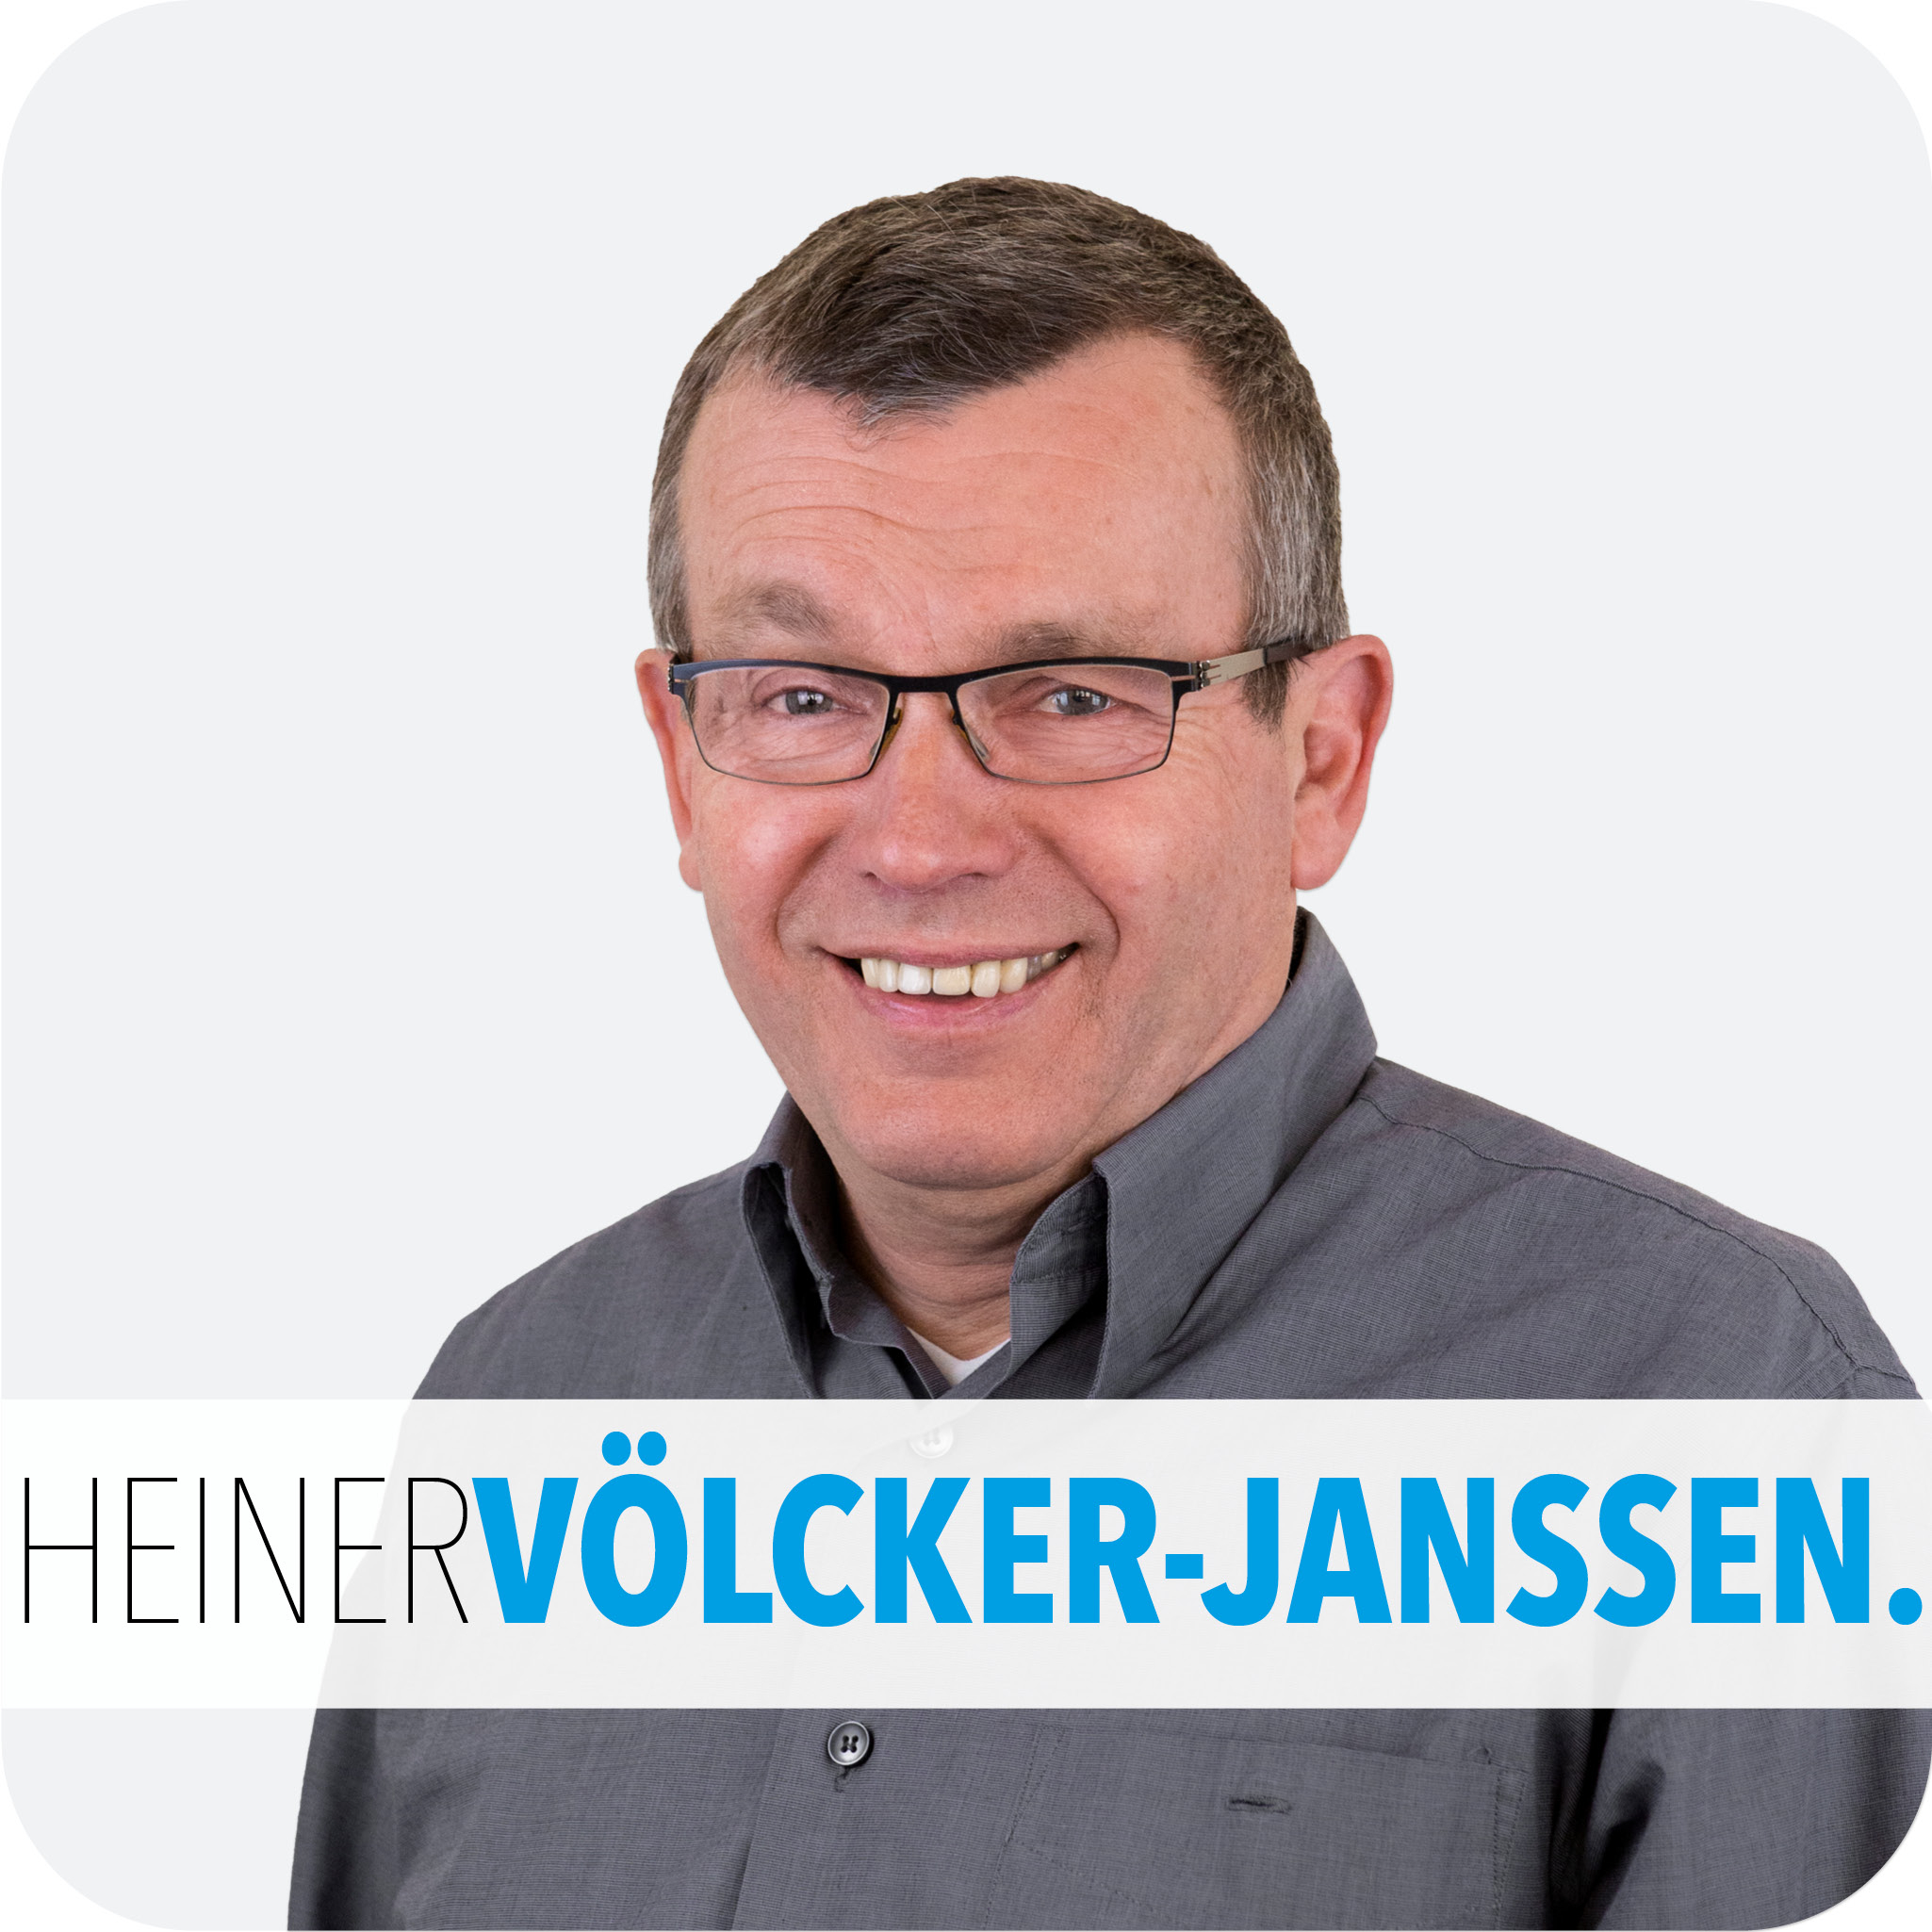 HEINER VÖLCKER-JANSSEN.